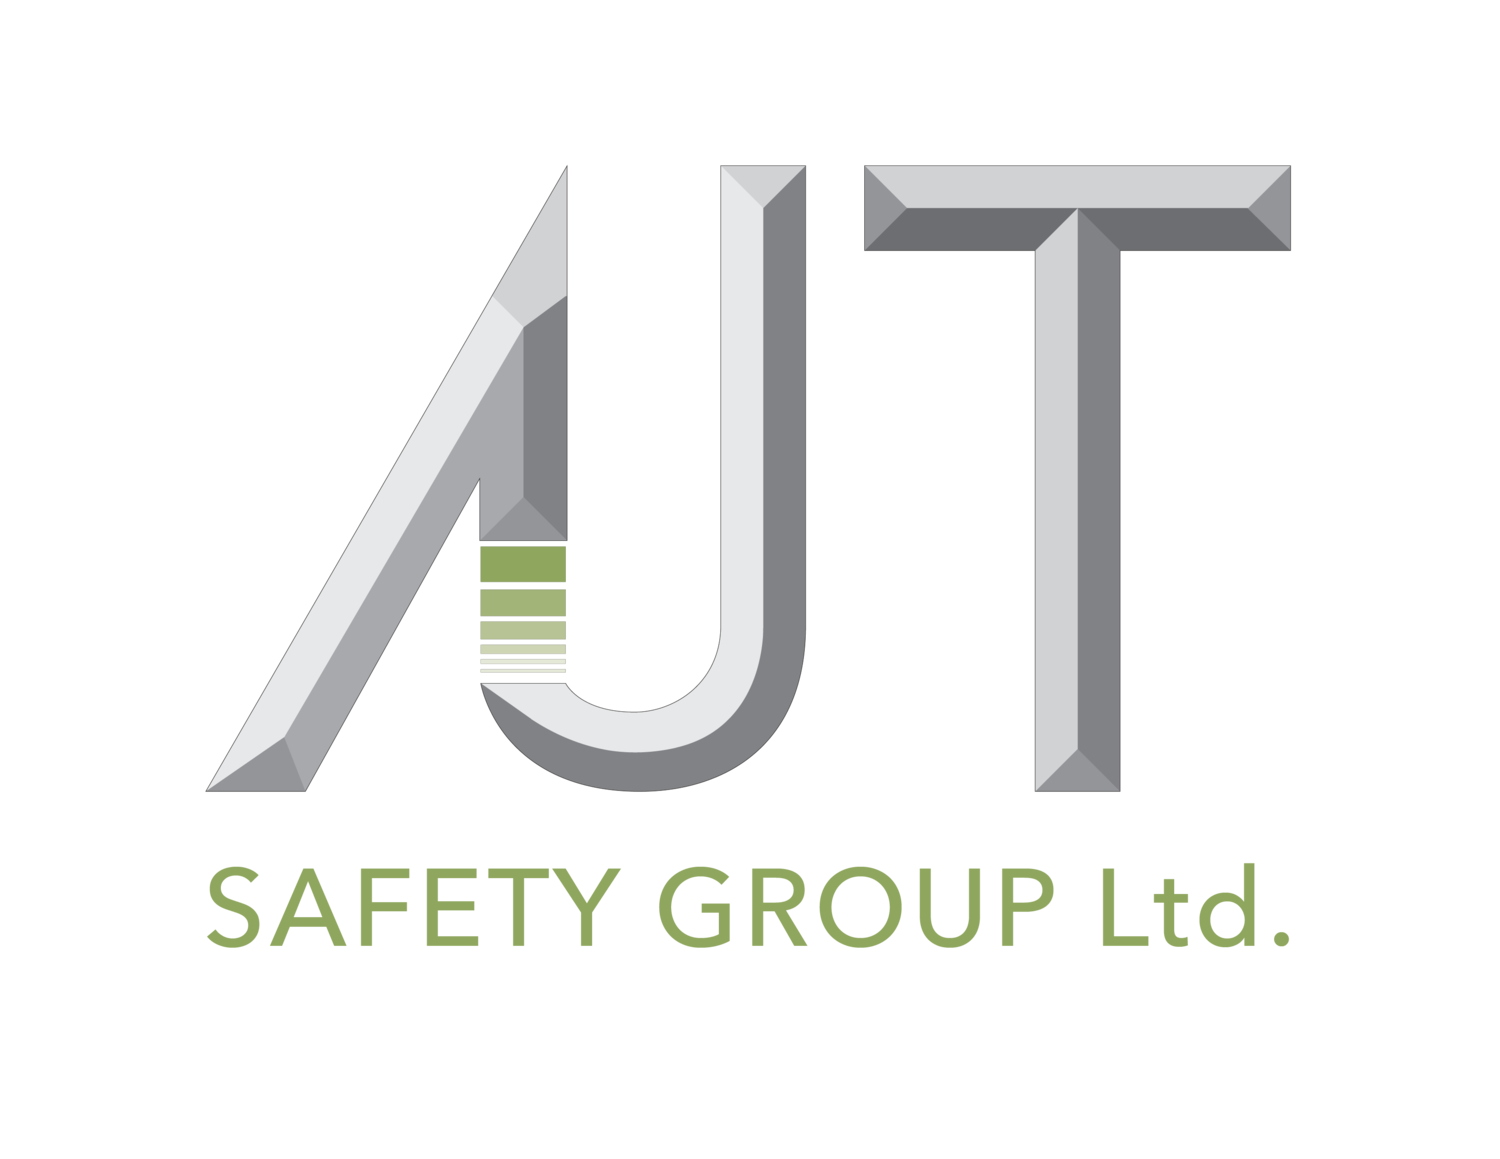 AJT Safety Group LTD